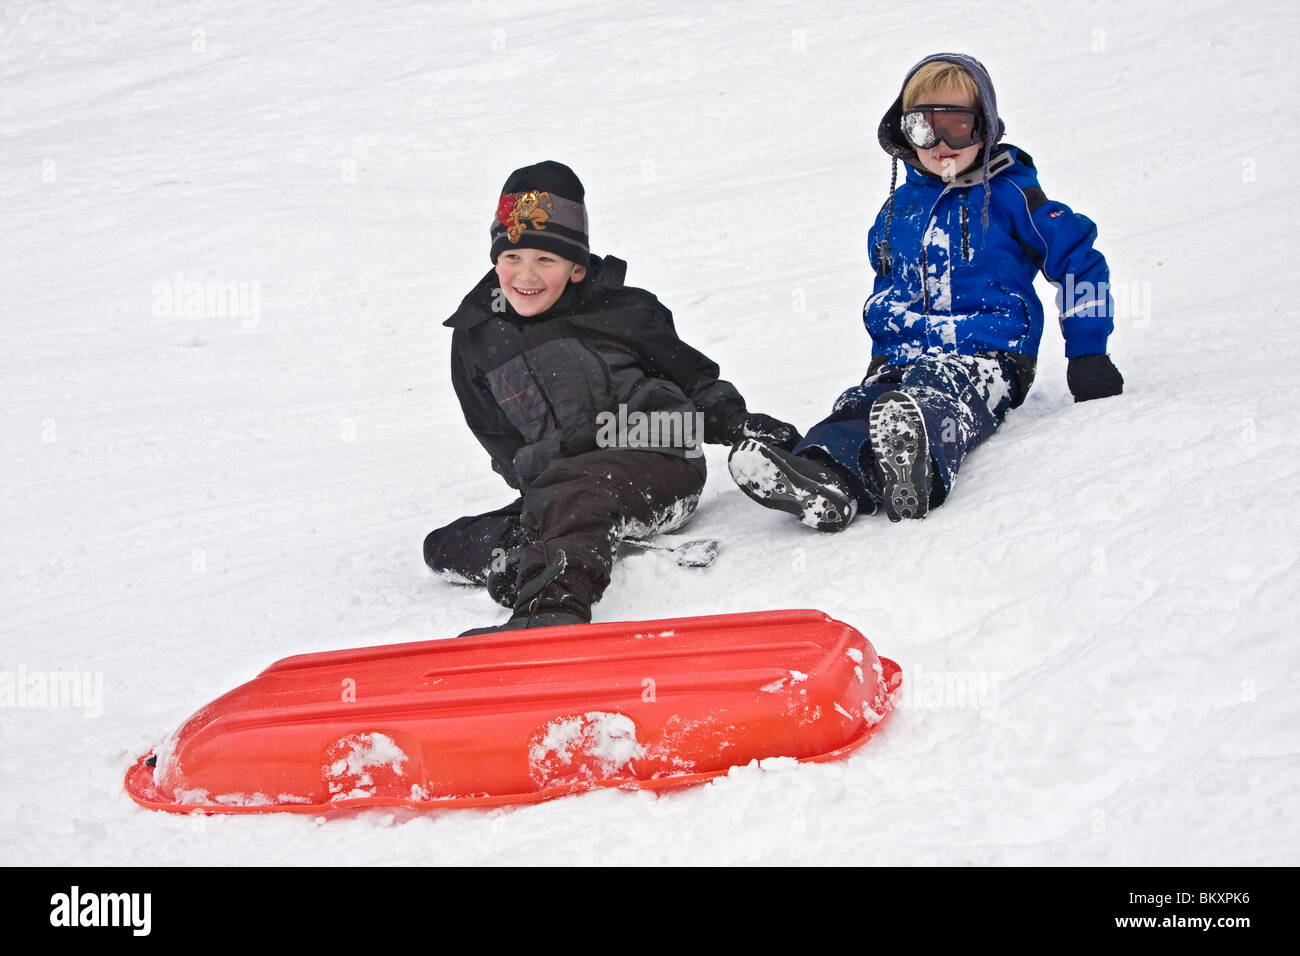 Les enfants en bas de pente courte de traîneau en hiver, South Lake Tahoe, California, USA. Ici deux garçons se démêler après un crash. Banque D'Images